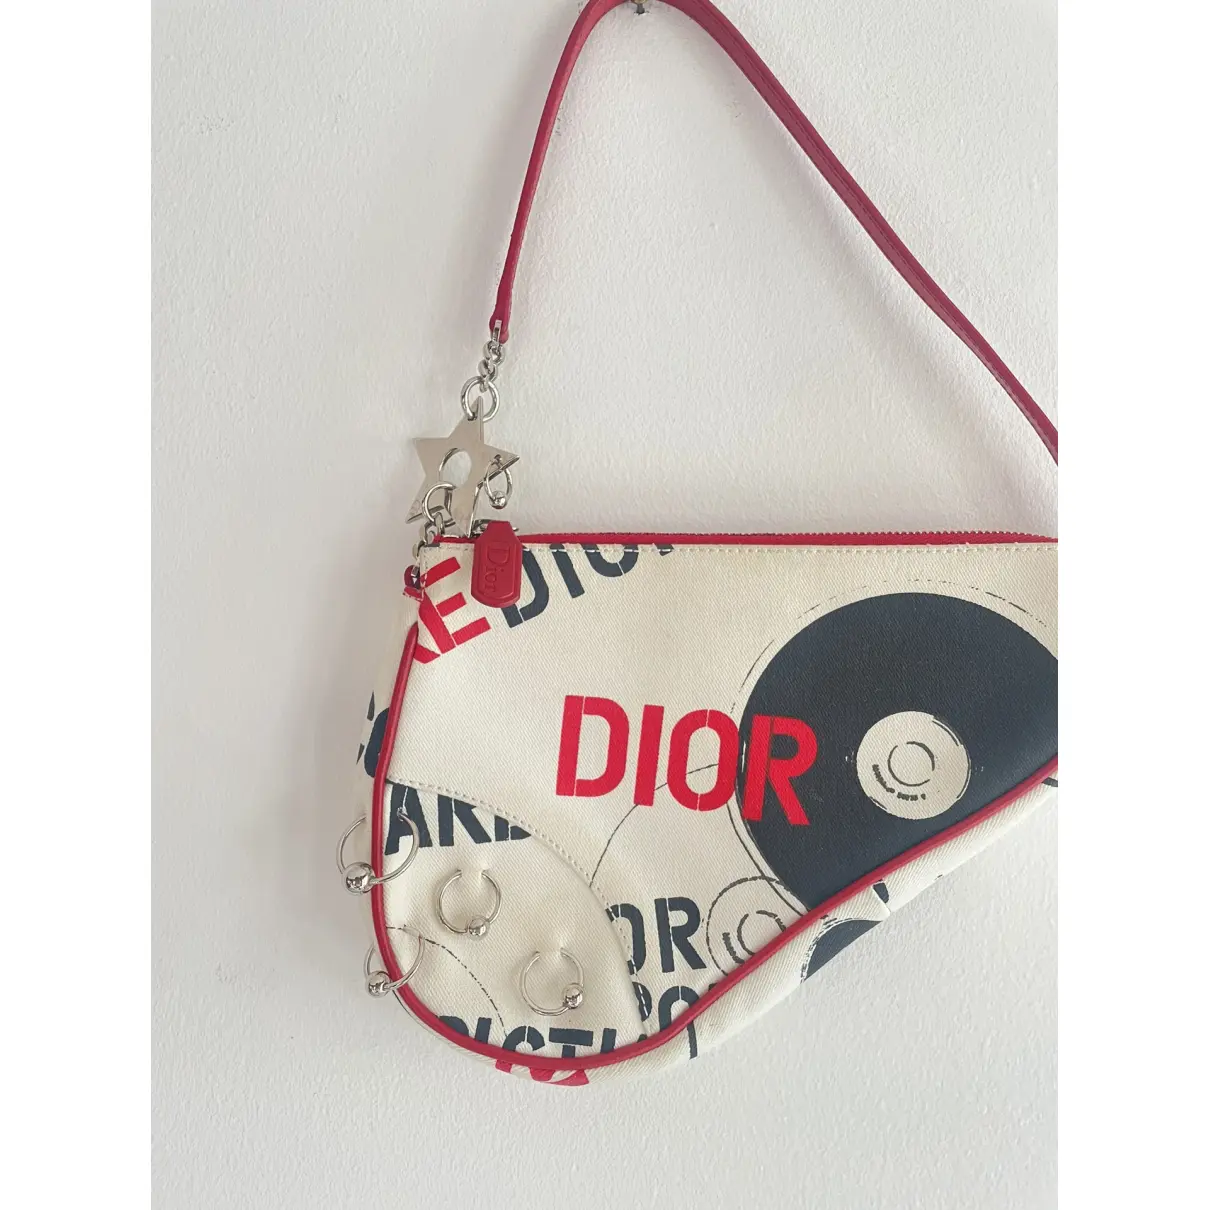 Buy Dior Saddle vintage Classic handbag online - Vintage